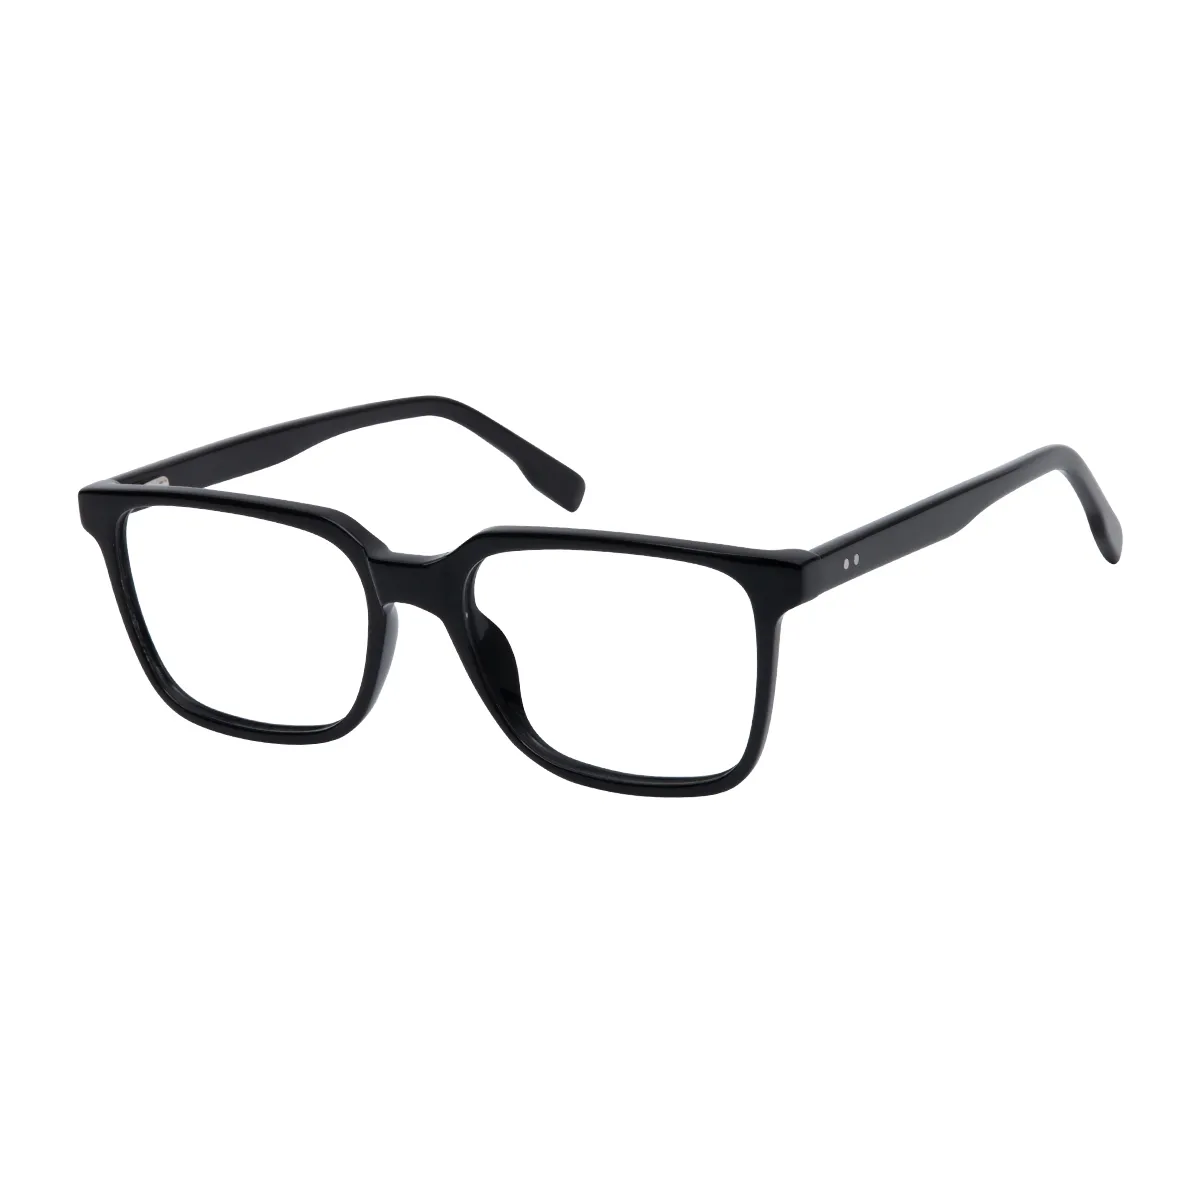 Poche - Rectangle Black Glasses for Men & Women